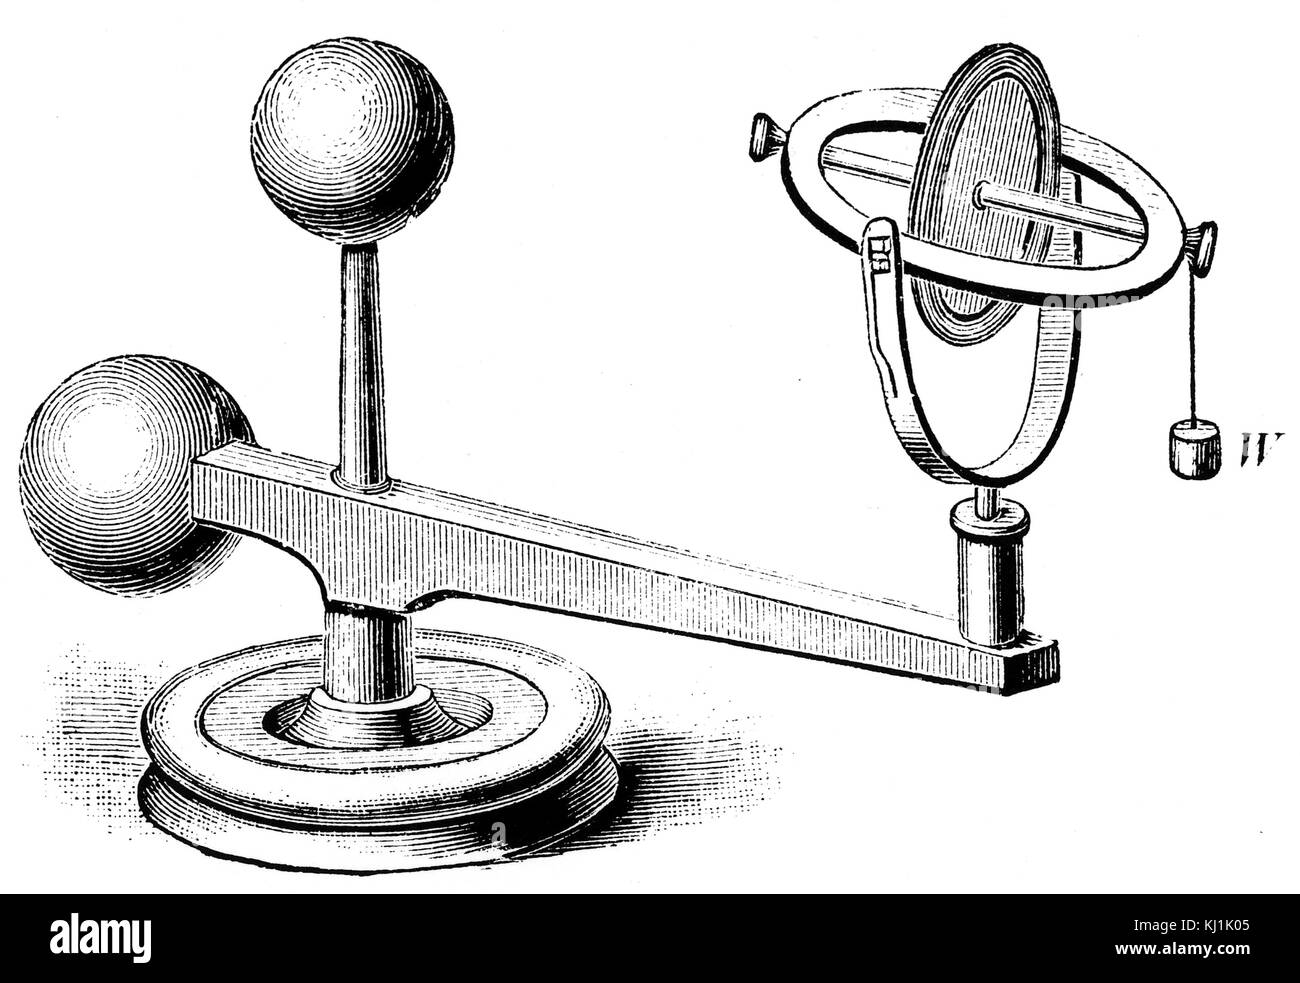 Gravur mit einem elektrischen Kreisel, ein Gerät, bestehend aus einem Rad oder Scheibe montiert, so dass es schnell um eine Achse, die sich kostenlos in Richtung zu ändern drehen können. Vom 19. Jahrhundert Stockfoto